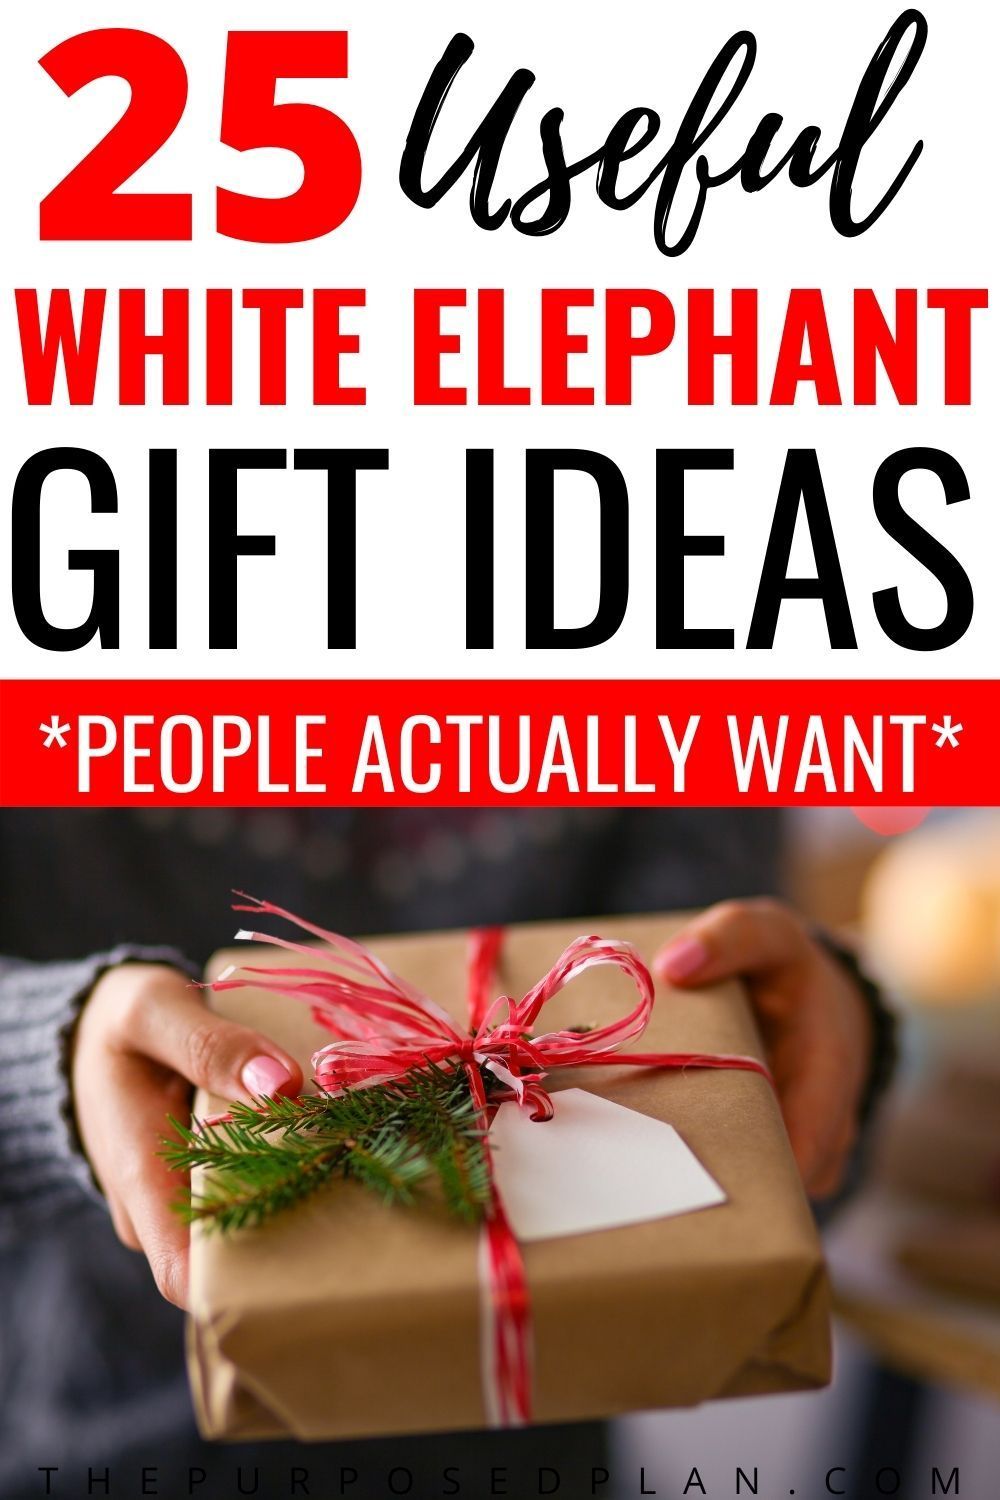 25 Useful White Elephant Gift Ideas -   Popular